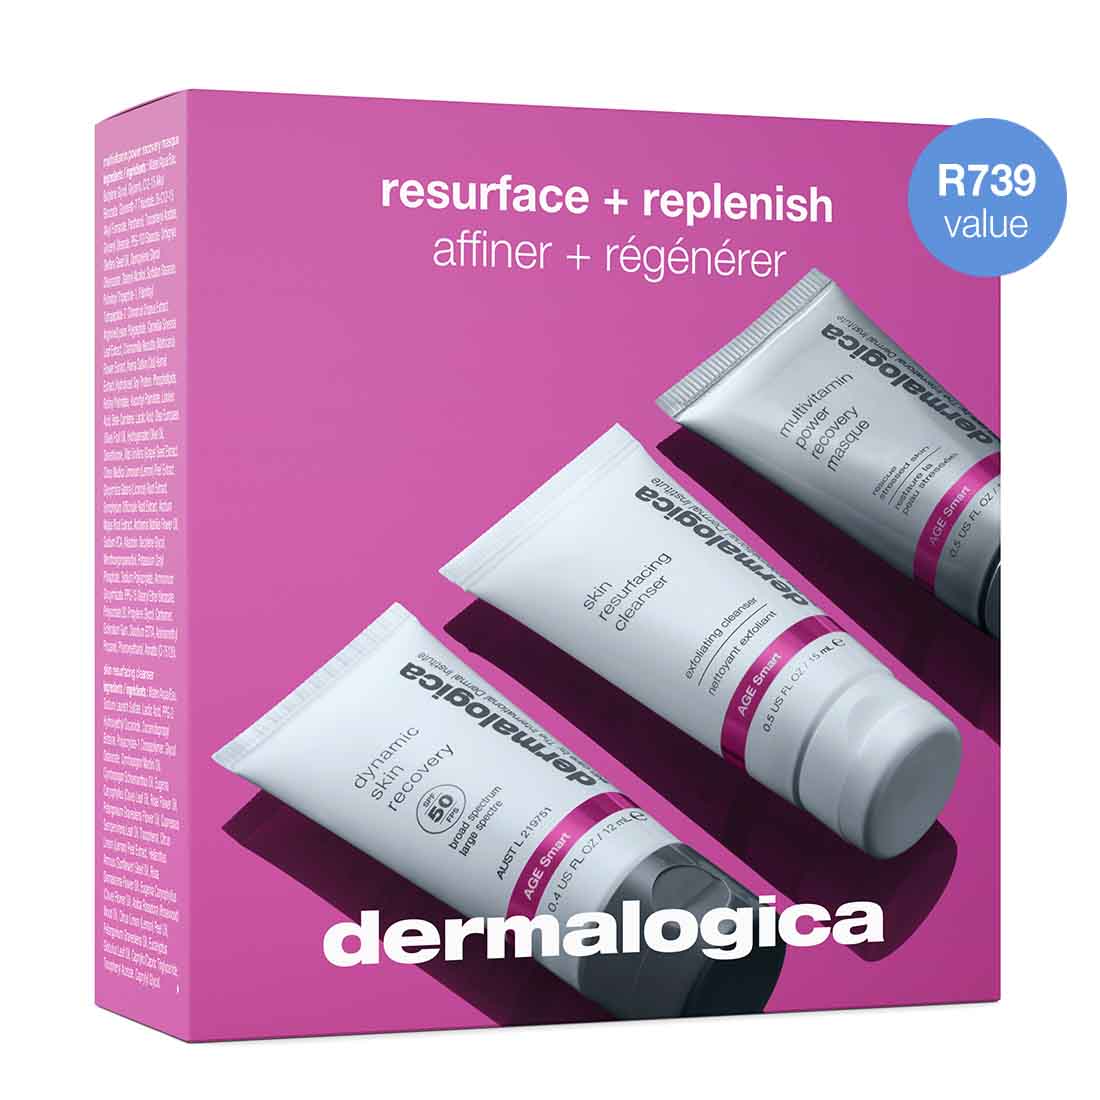 resurface + replenish kit